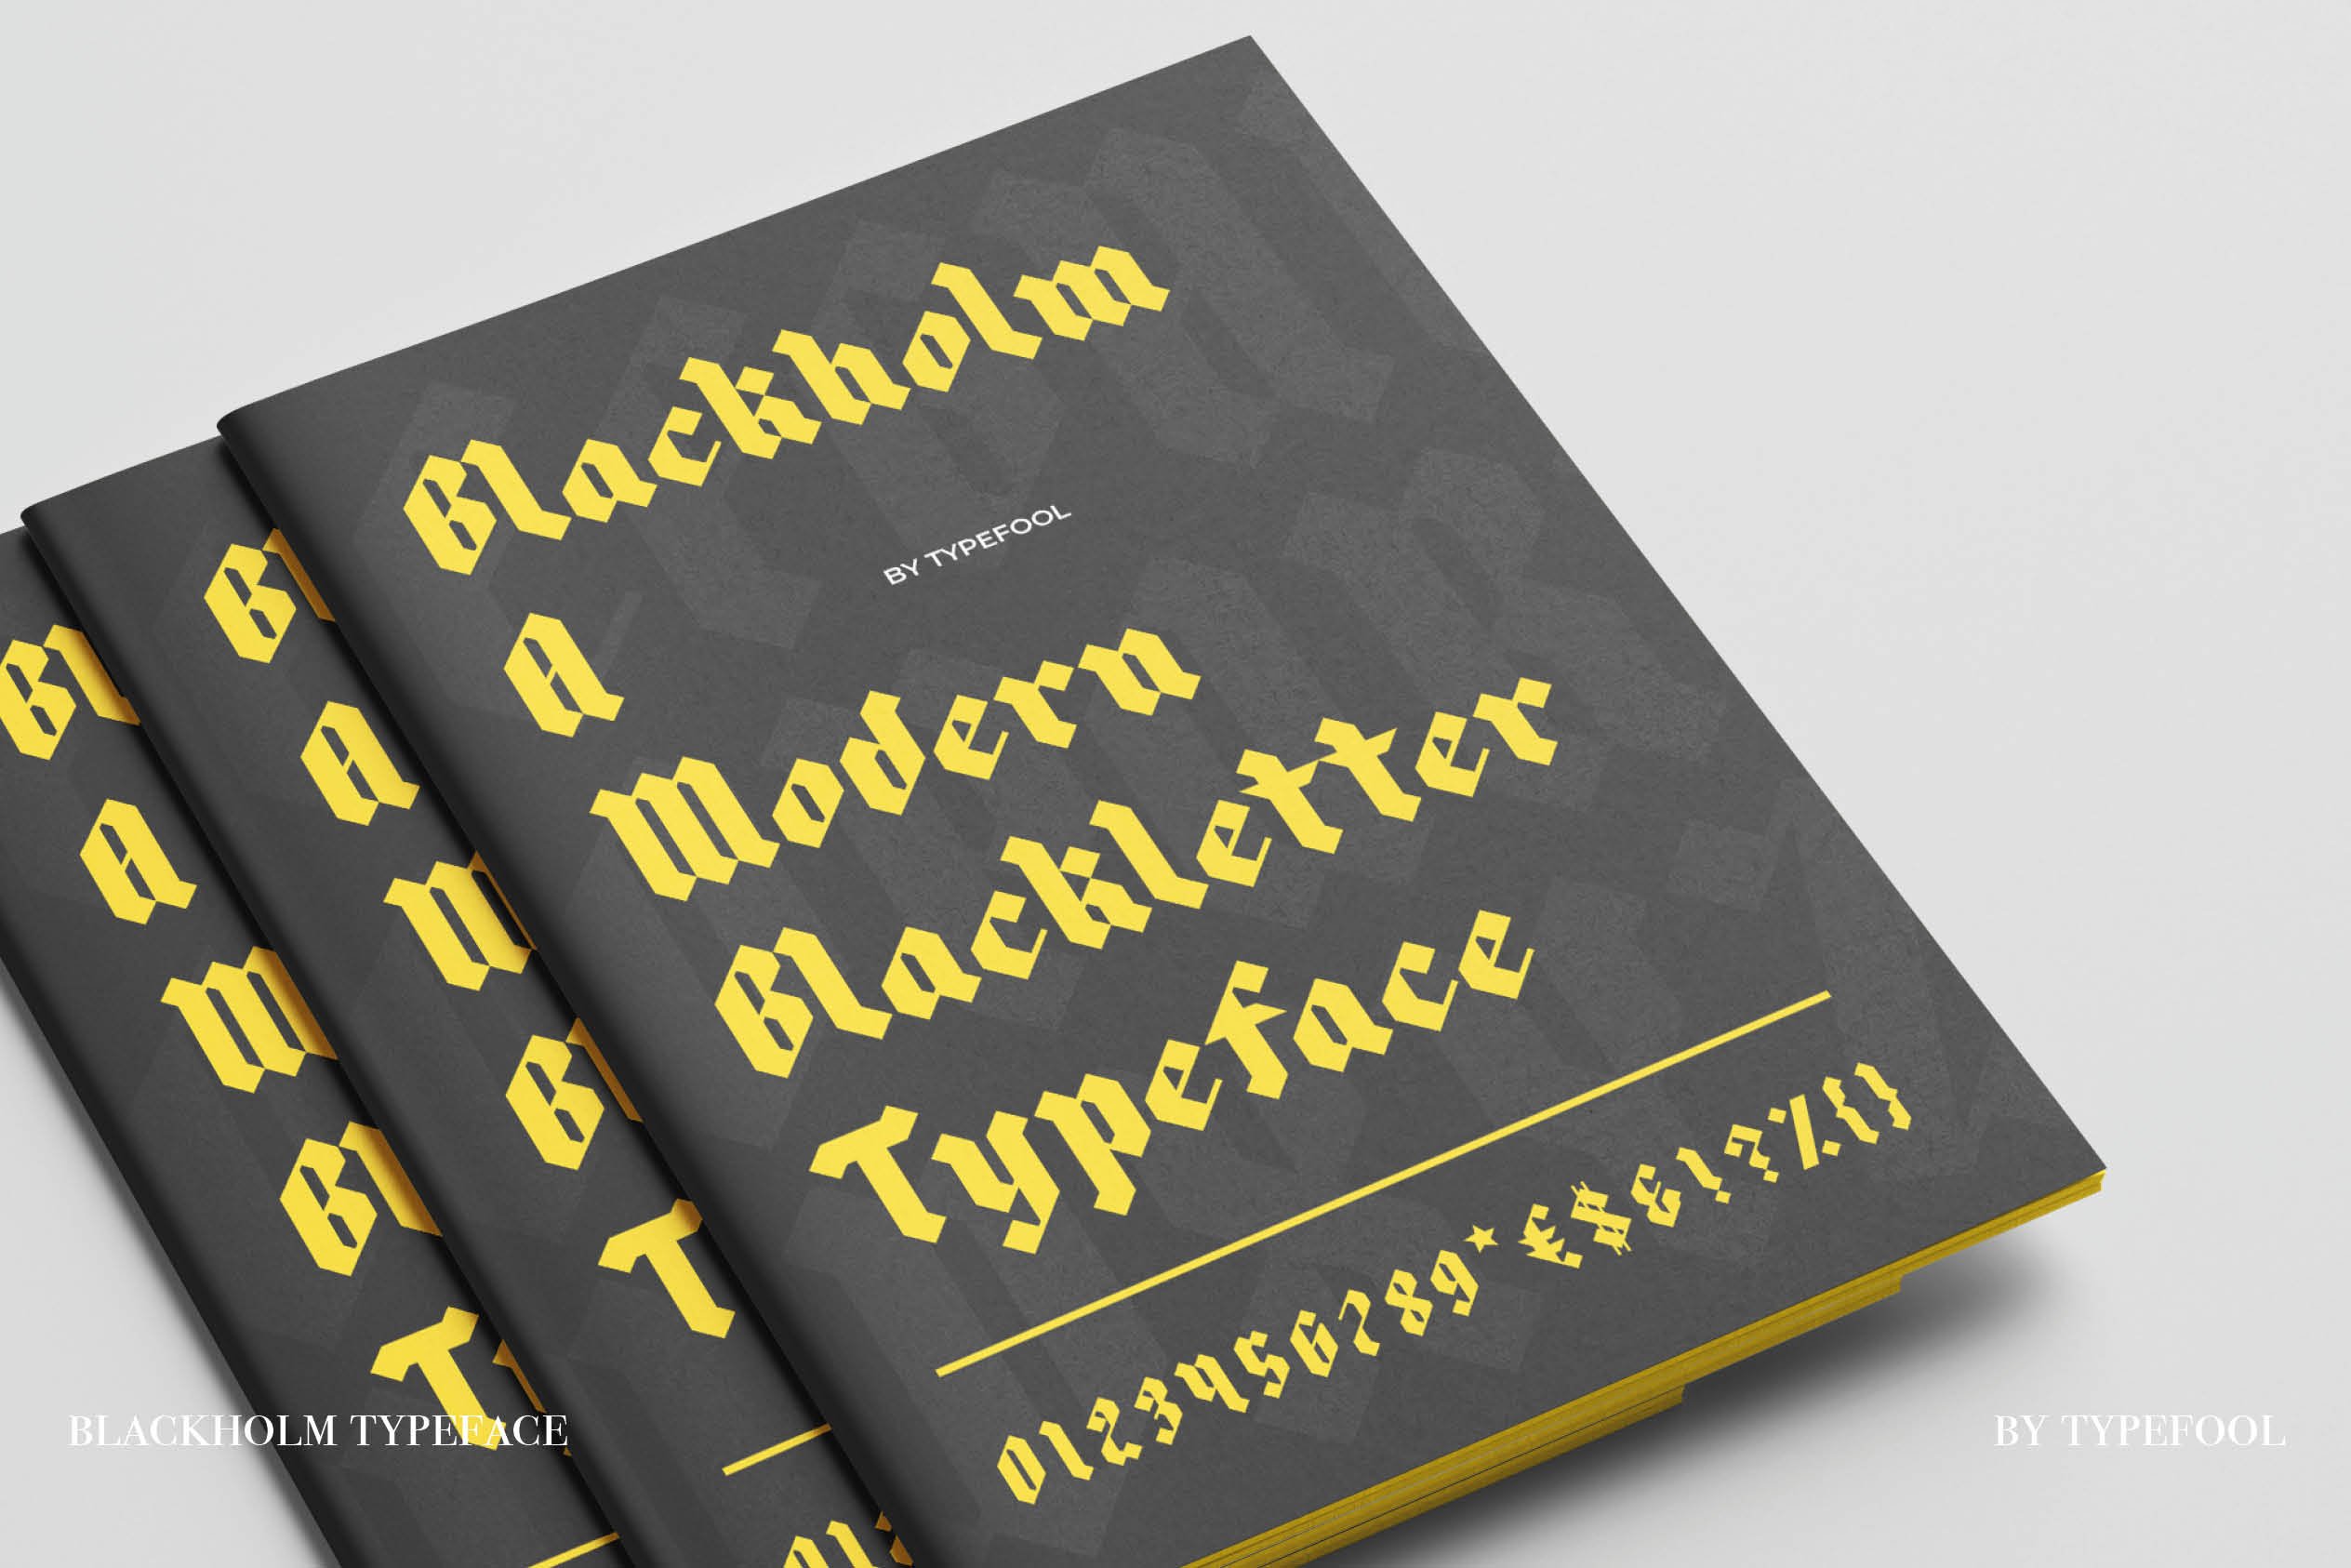 blackholm blackletter promotional9 279